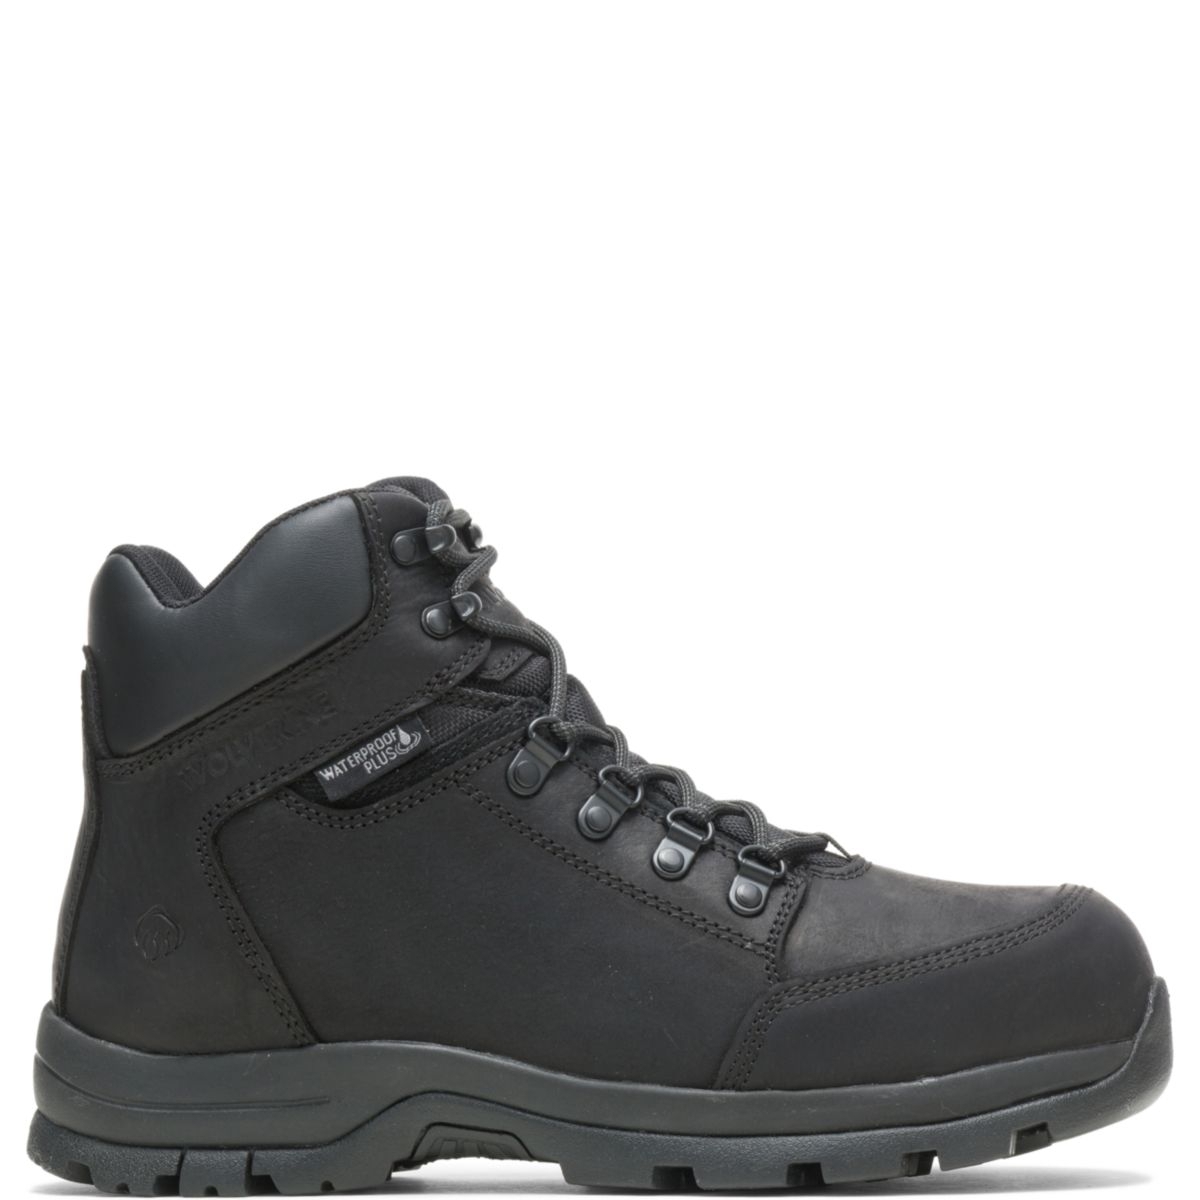 WOLVERINE Men's Grayson Steel Toe Waterproof Work Boot Black - W211042 BLACK - BLACK, 7 X-Wide